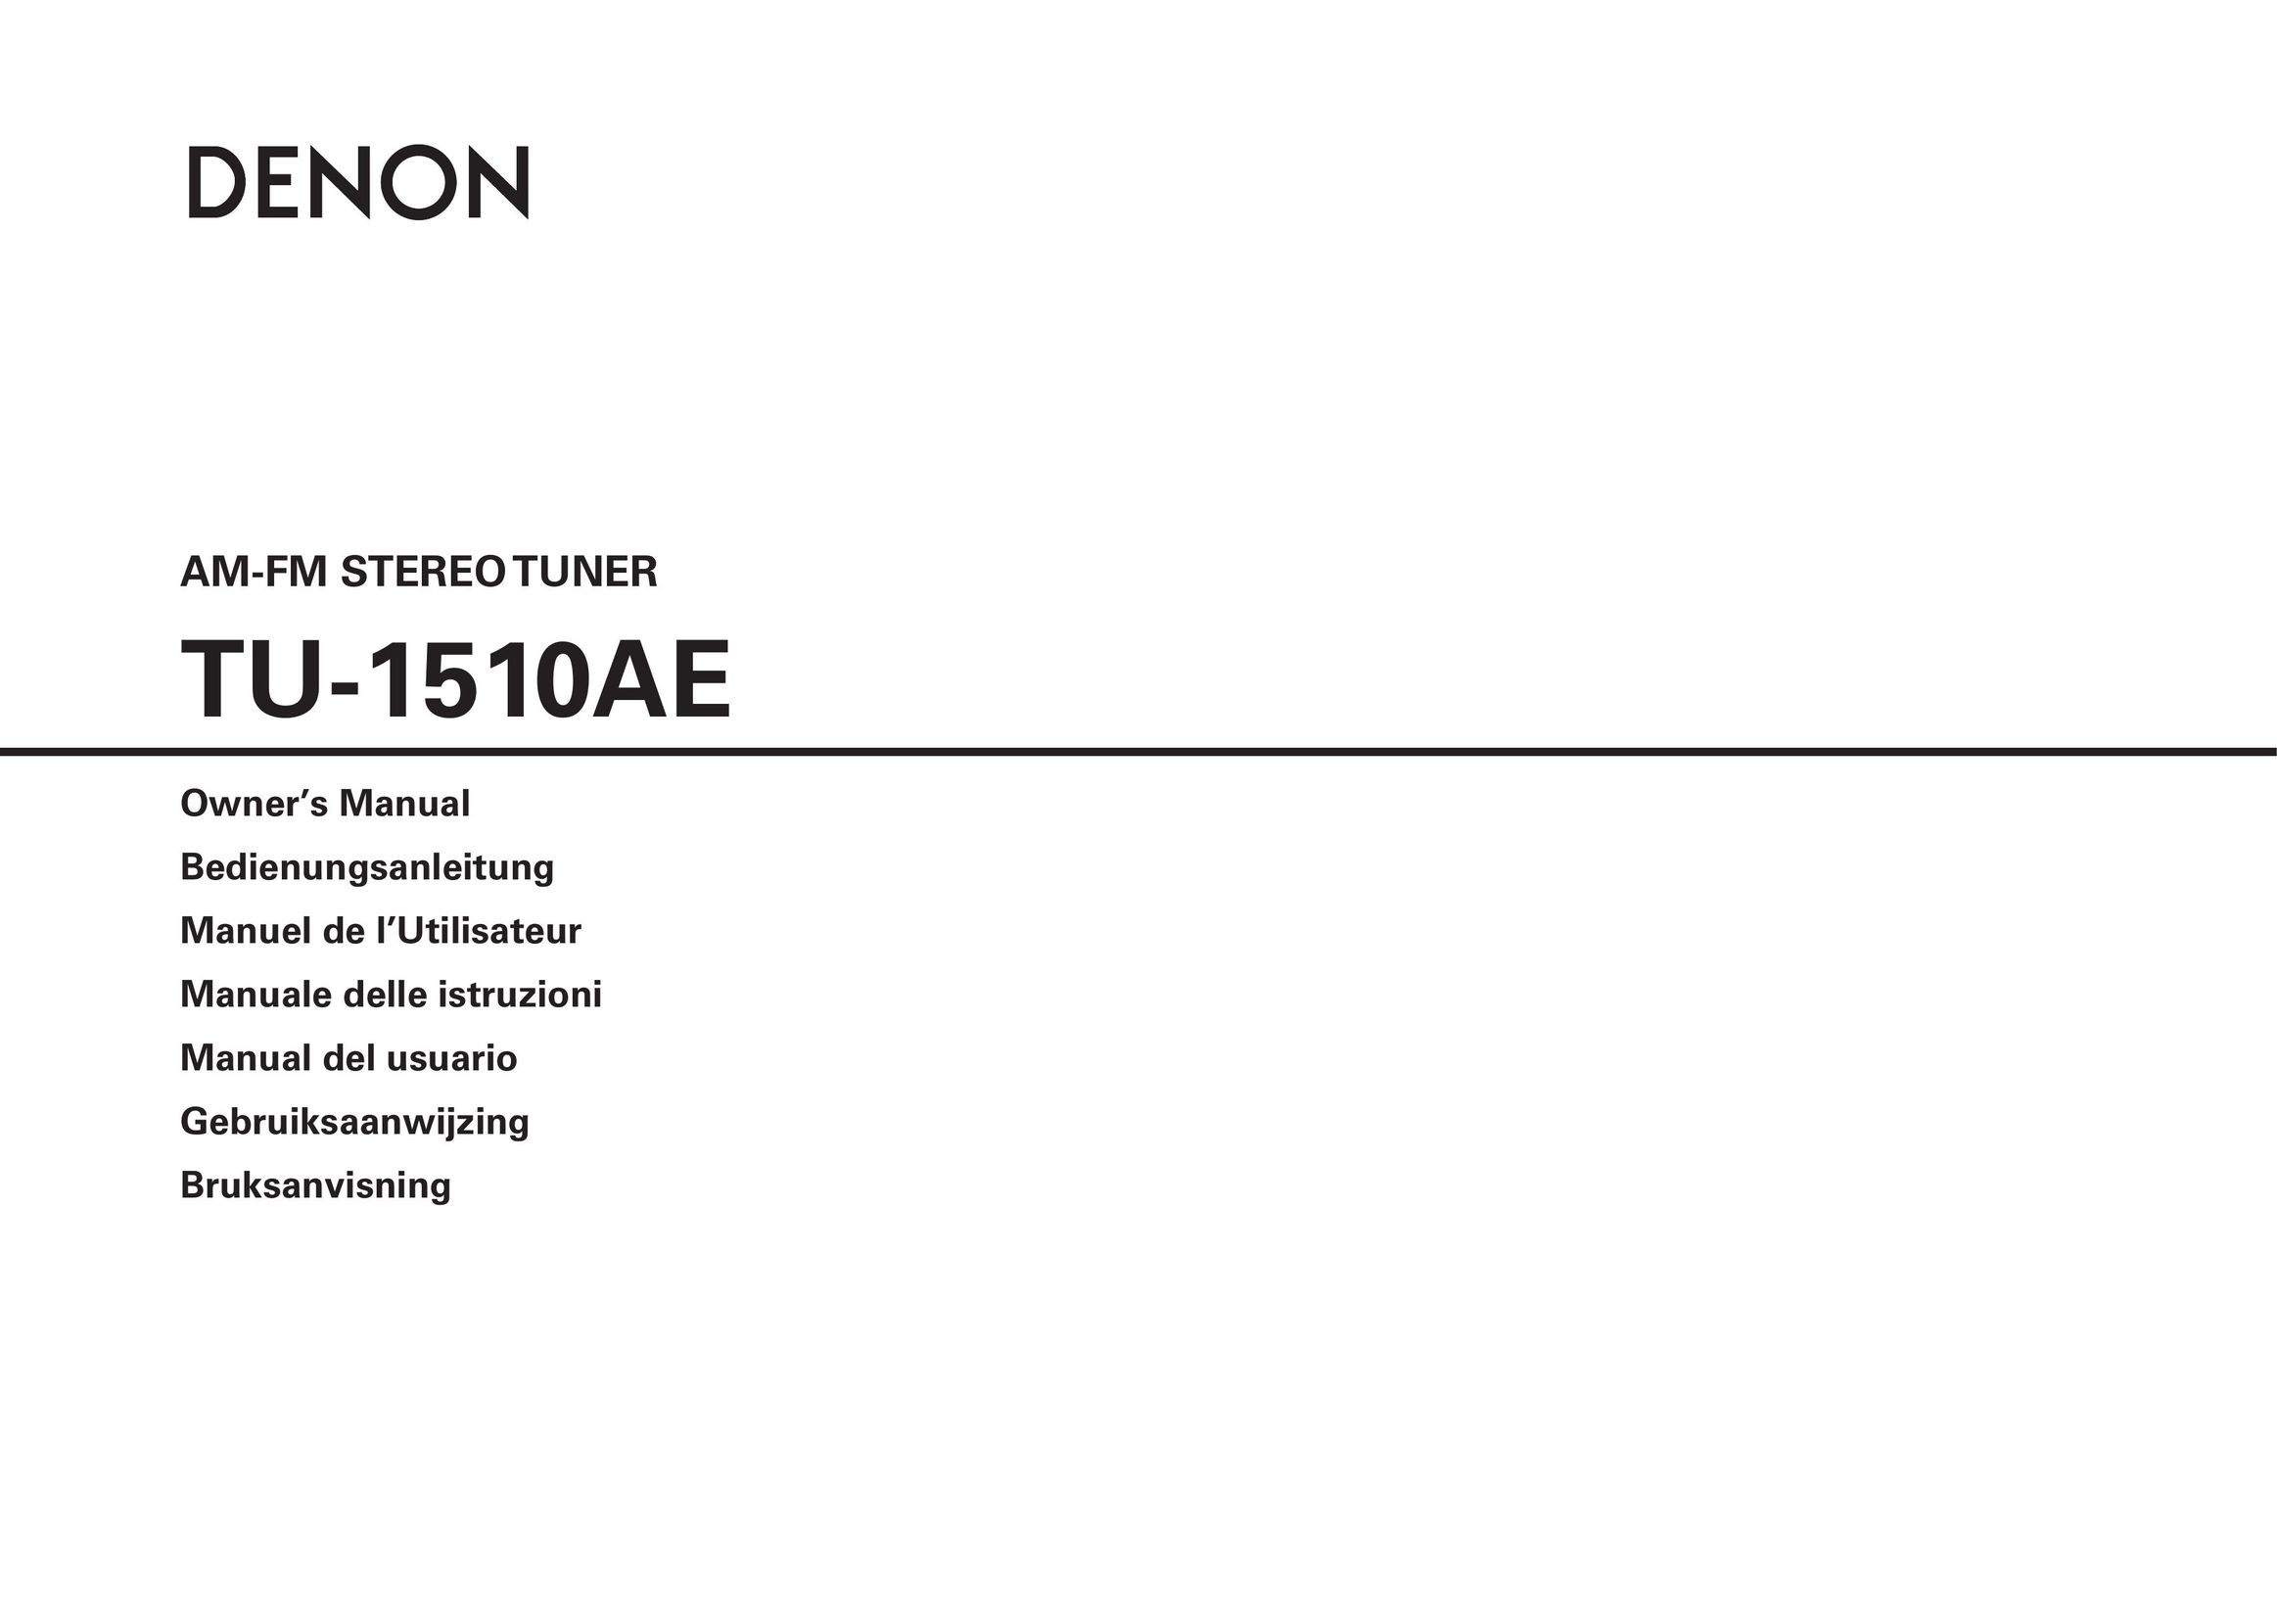 Denon TU-1510AE Radio User Manual